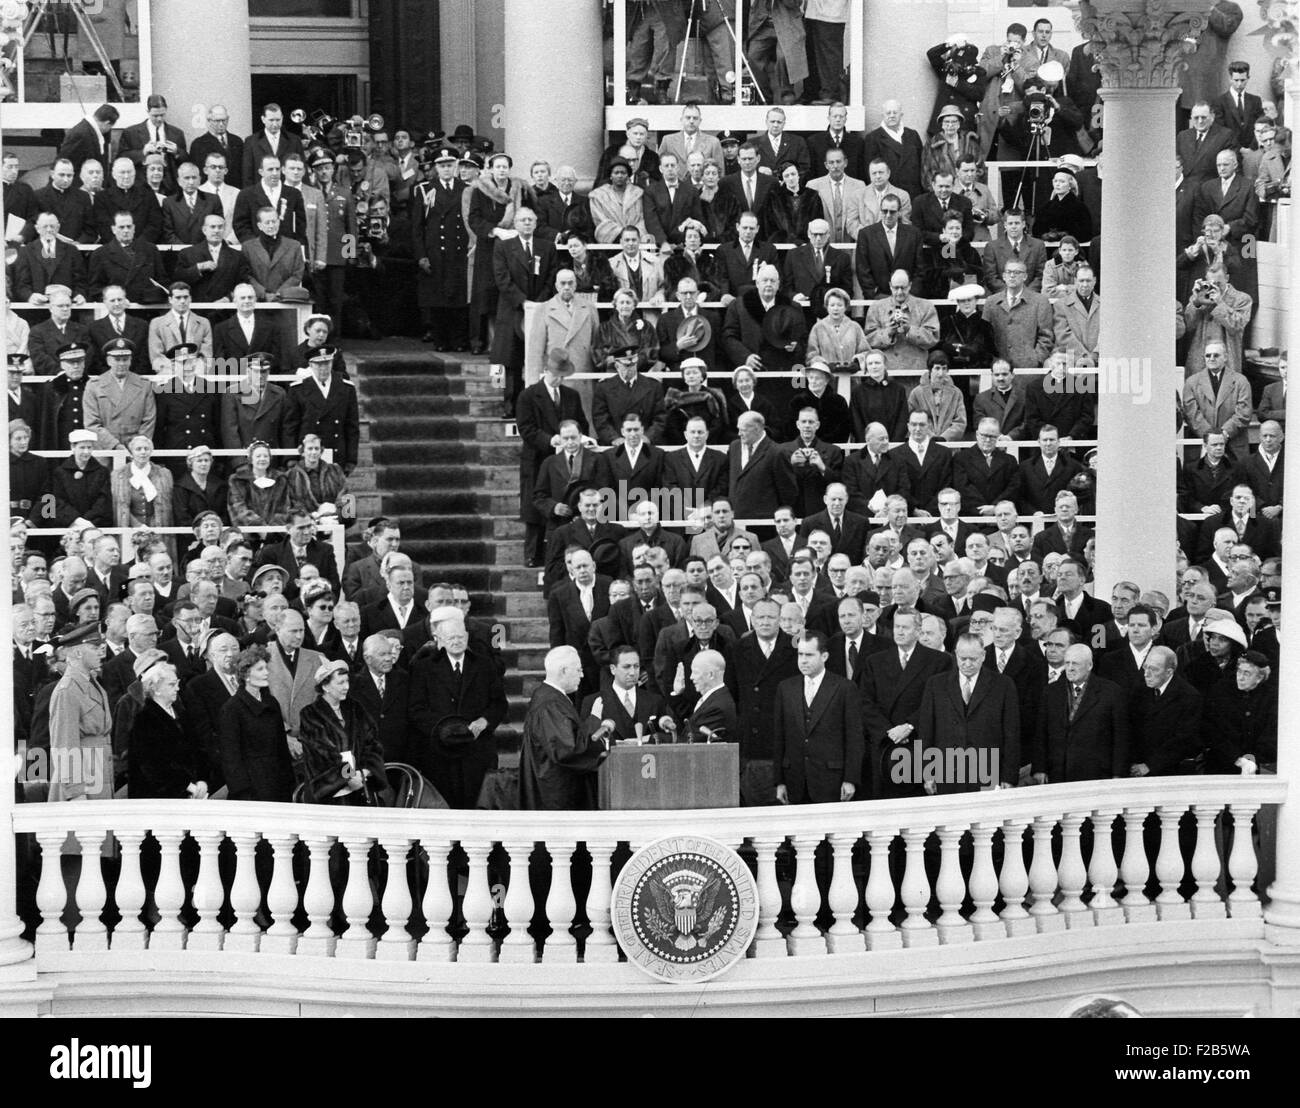 Präsident Eisenhower von Chief Justice Earl Warren vereidigt. 21. Januar 1957. Gruppe gehören hochrangige Mitglieder des Kongresses, geladene Gäste und Presidential Familien. -(BSLOC 2014 16 35) Stockfoto